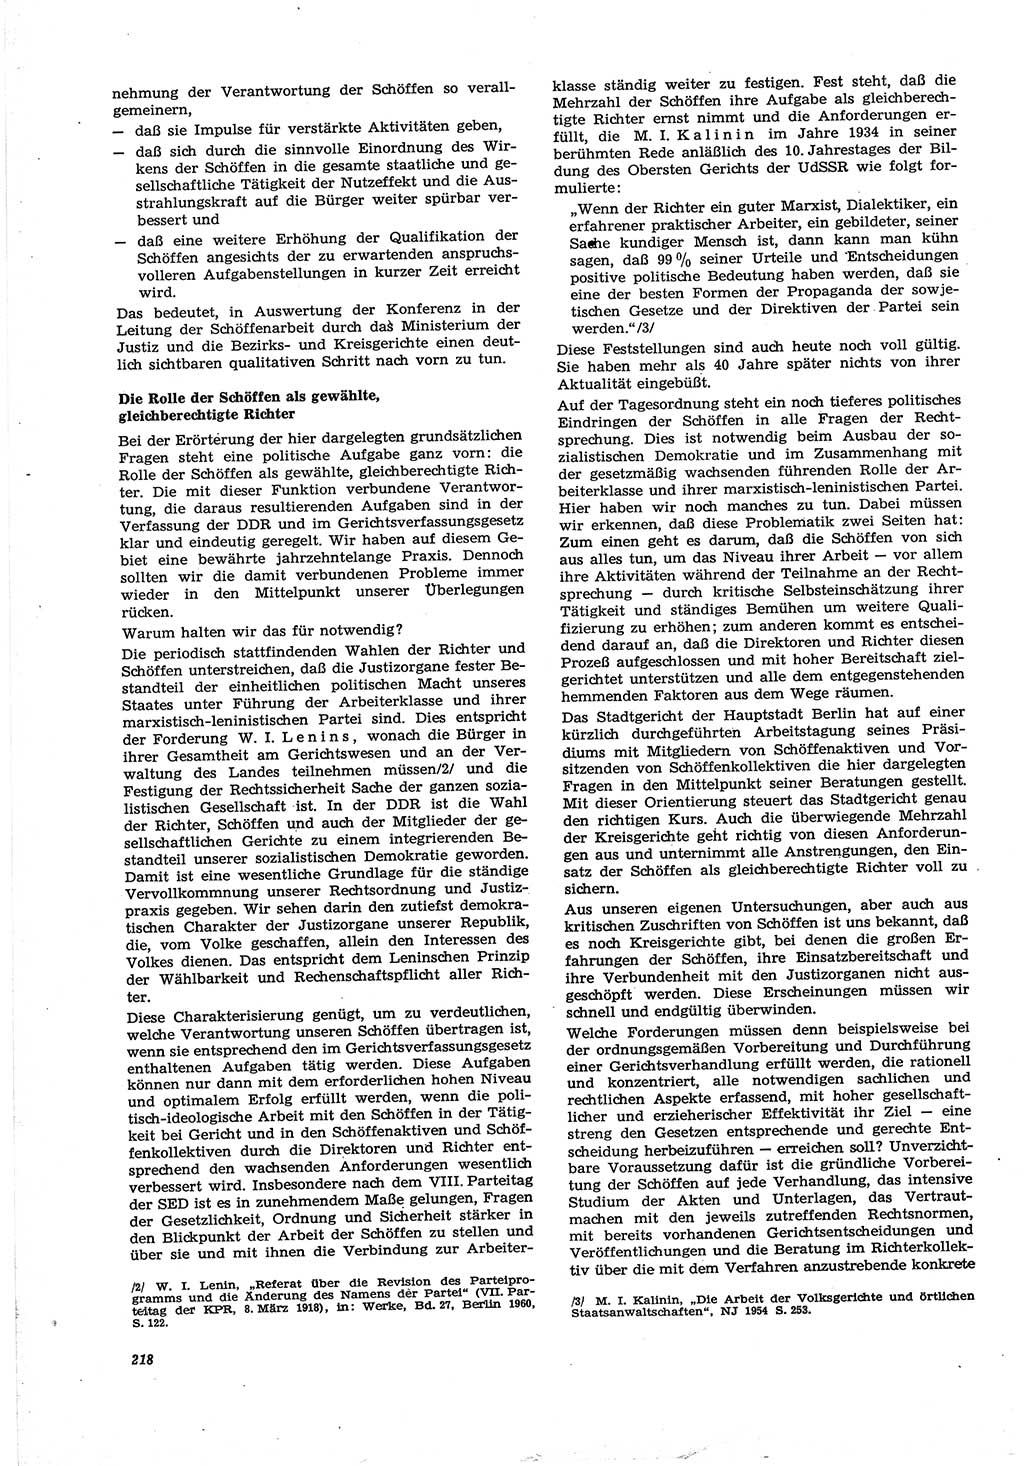 Neue Justiz (NJ), Zeitschrift für Recht und Rechtswissenschaft [Deutsche Demokratische Republik (DDR)], 30. Jahrgang 1976, Seite 218 (NJ DDR 1976, S. 218)